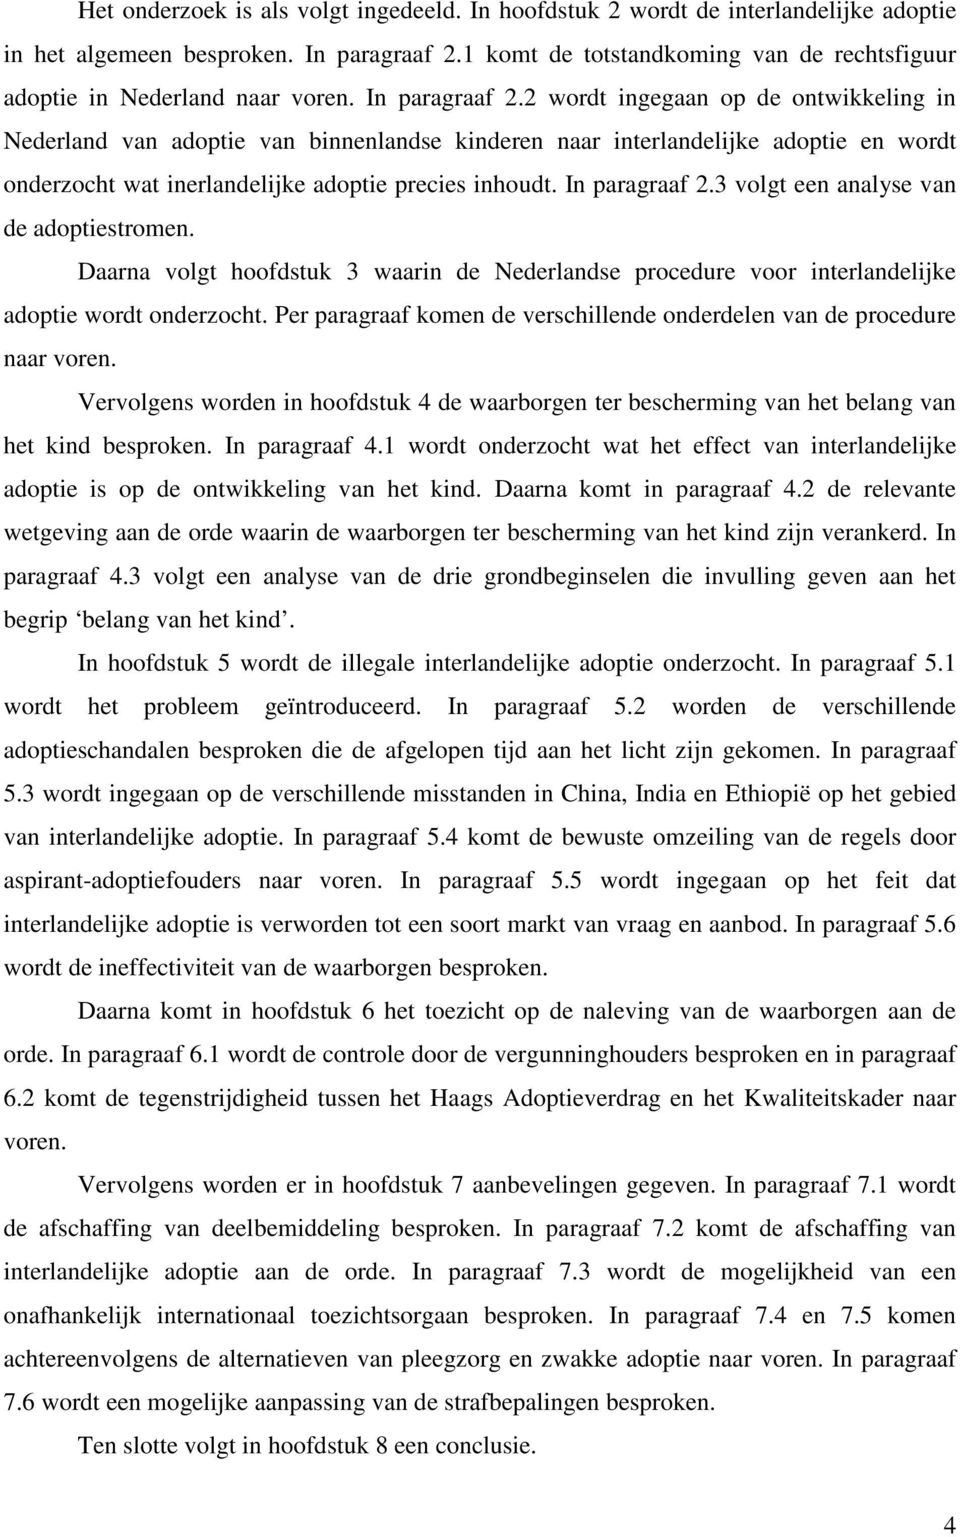 2 wordt ingegaan op de ontwikkeling in Nederland van adoptie van binnenlandse kinderen naar interlandelijke adoptie en wordt onderzocht wat inerlandelijke adoptie precies inhoudt. In paragraaf 2.